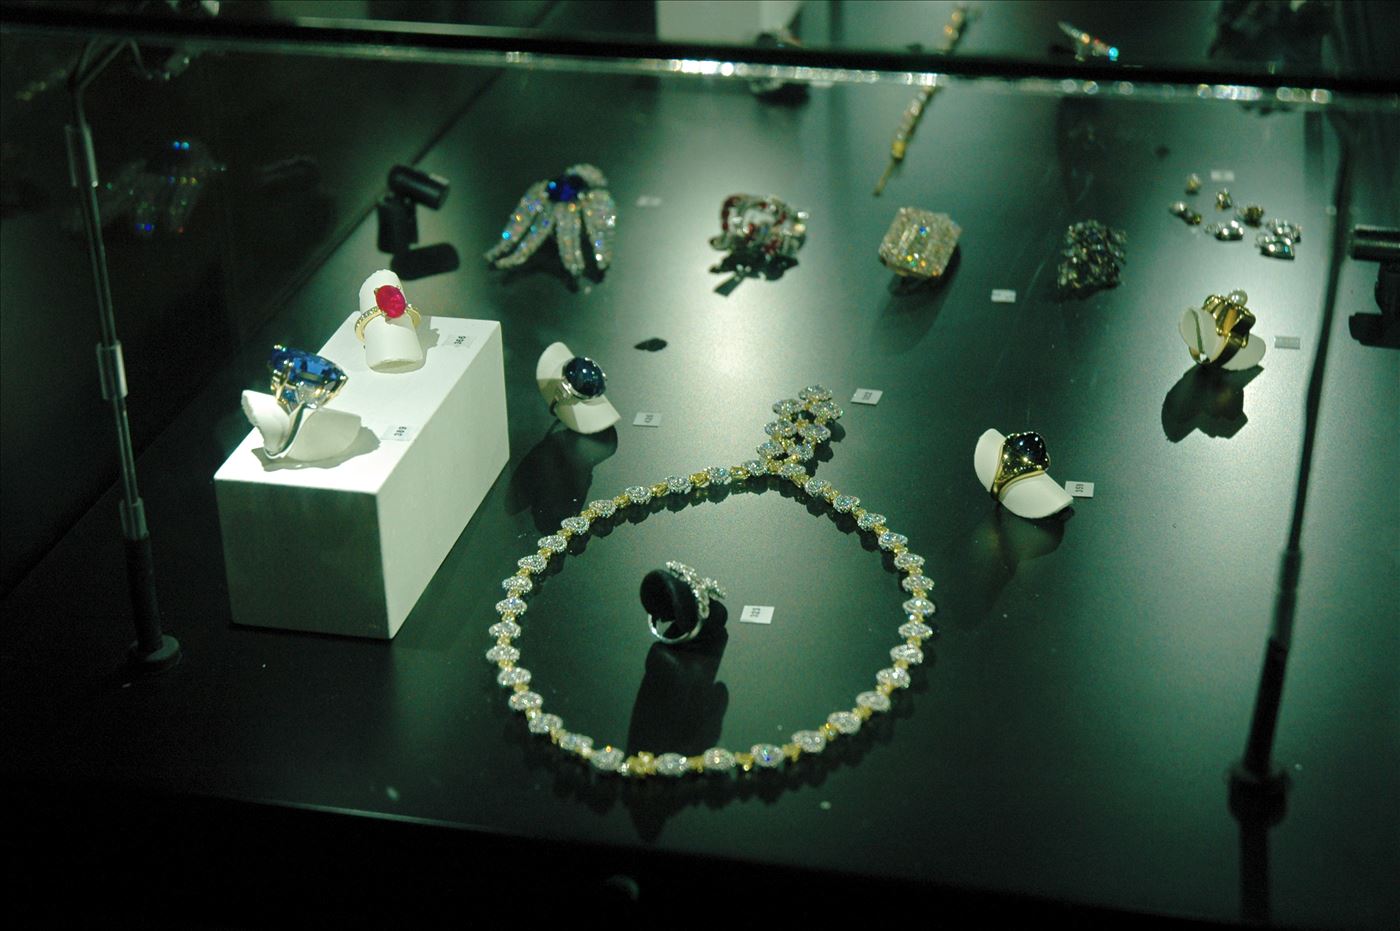 גלרייה - תערוכת תכשיטים במוזיאון - אבנר צופיוף 31.5.2006, 4 מתוך 22